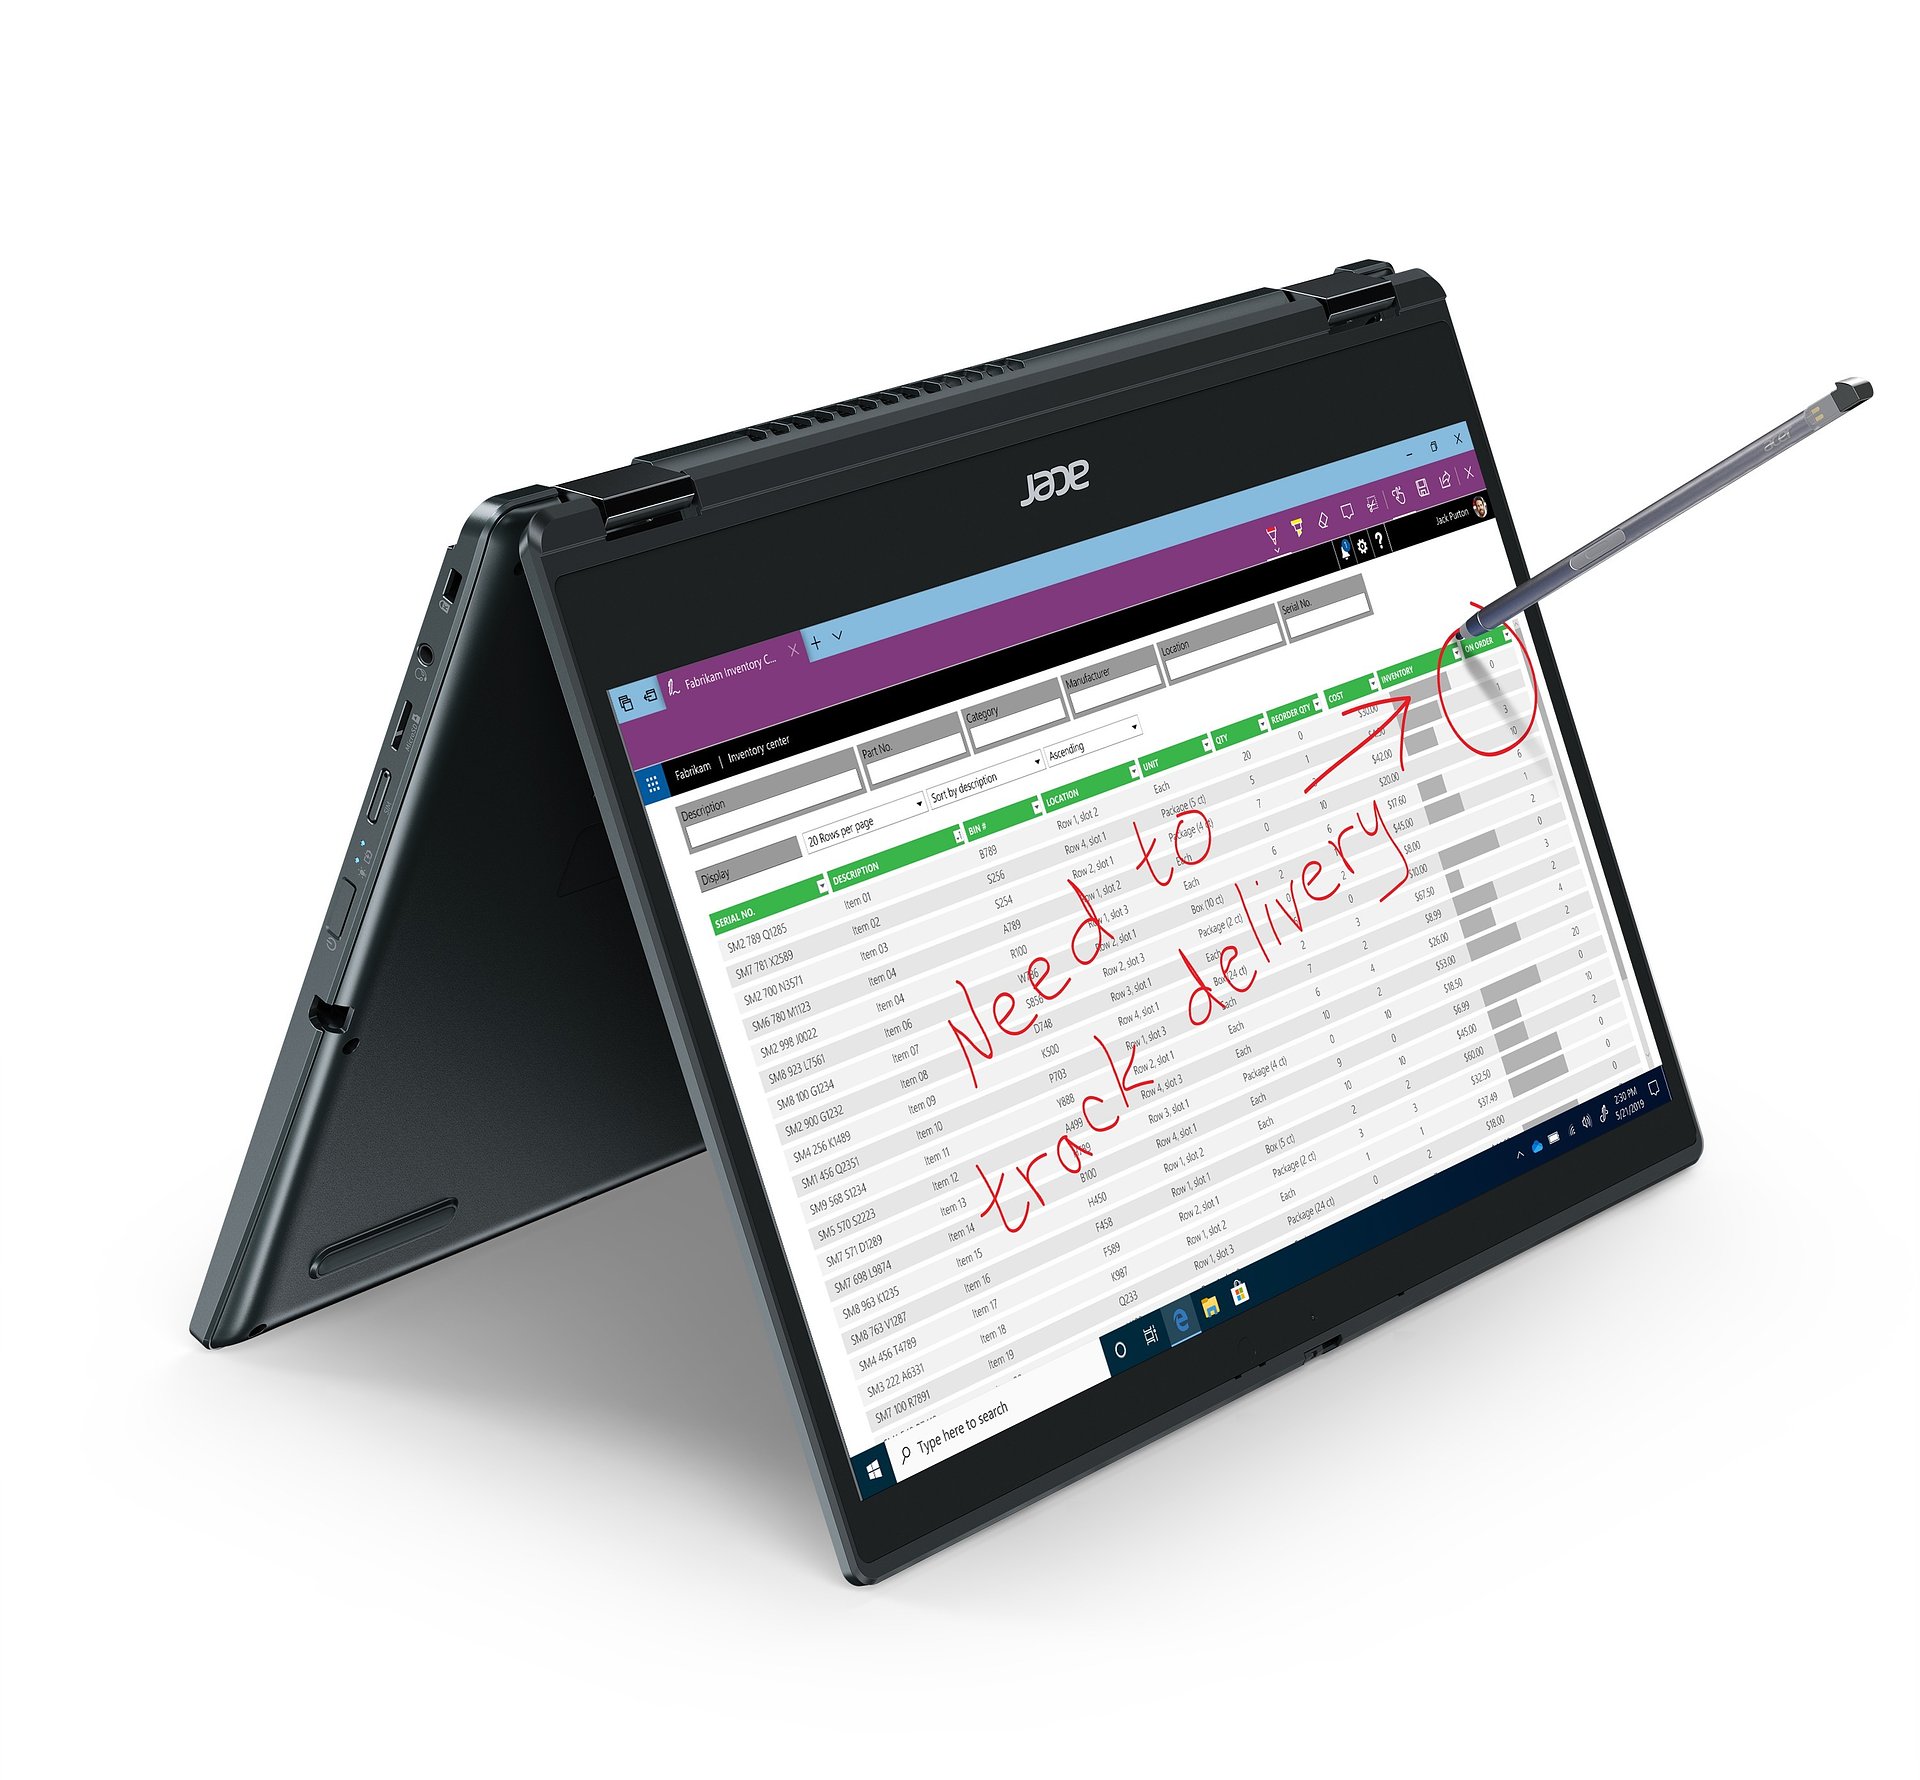 Acer prezentuje 3 nowości w postaci wytrzymałych biznesowych laptopów z serii TravelMate